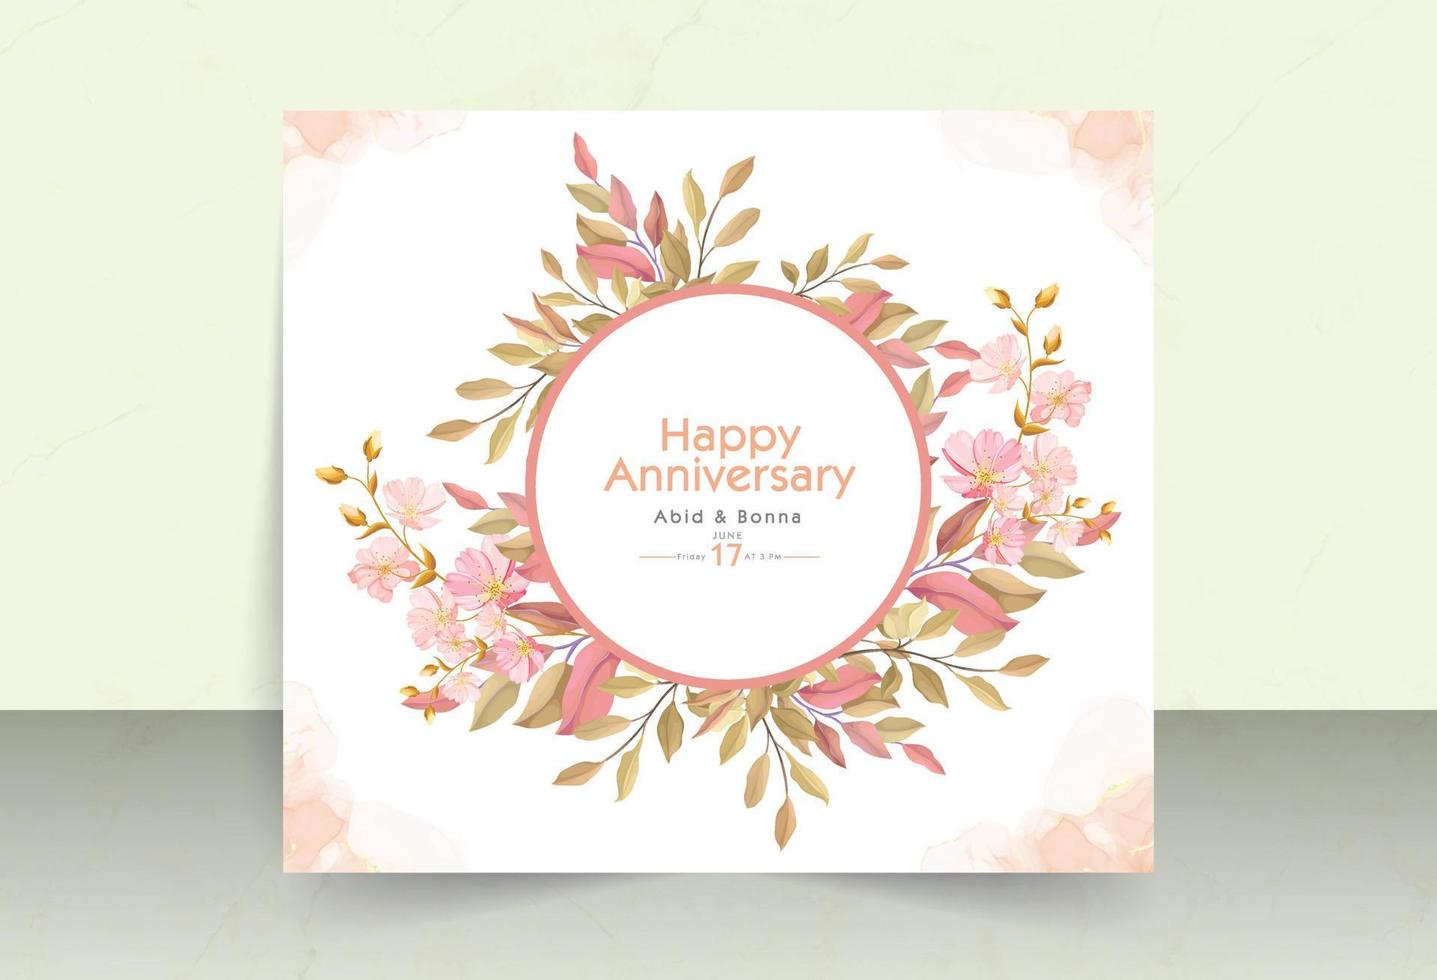 hojas de naranja rosa con flor de cosmos y tarjeta de aniversario de marco redondo vector